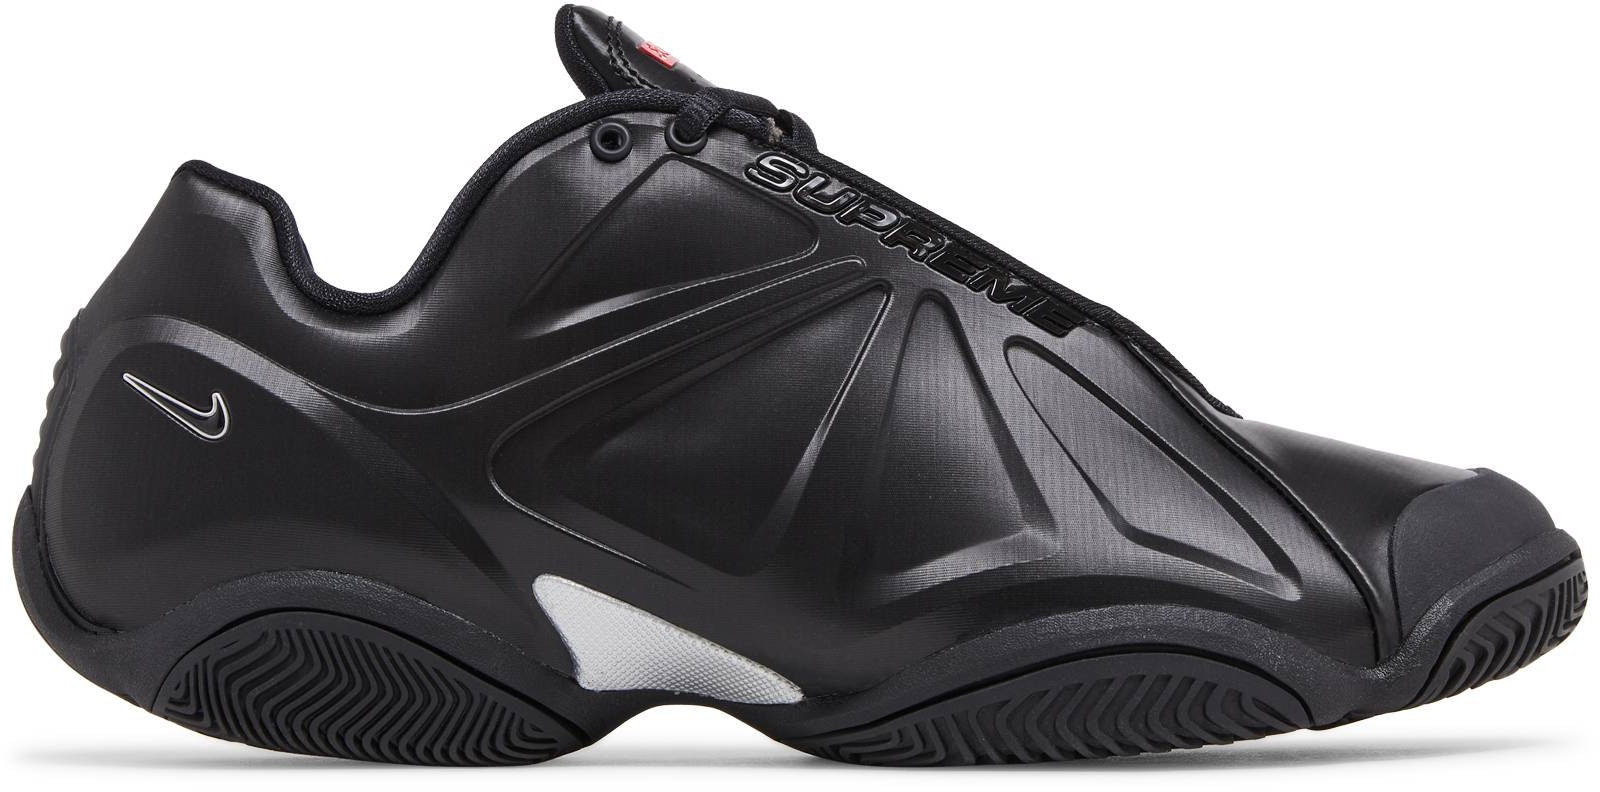 supSupreme Nike Courtposite Black 27